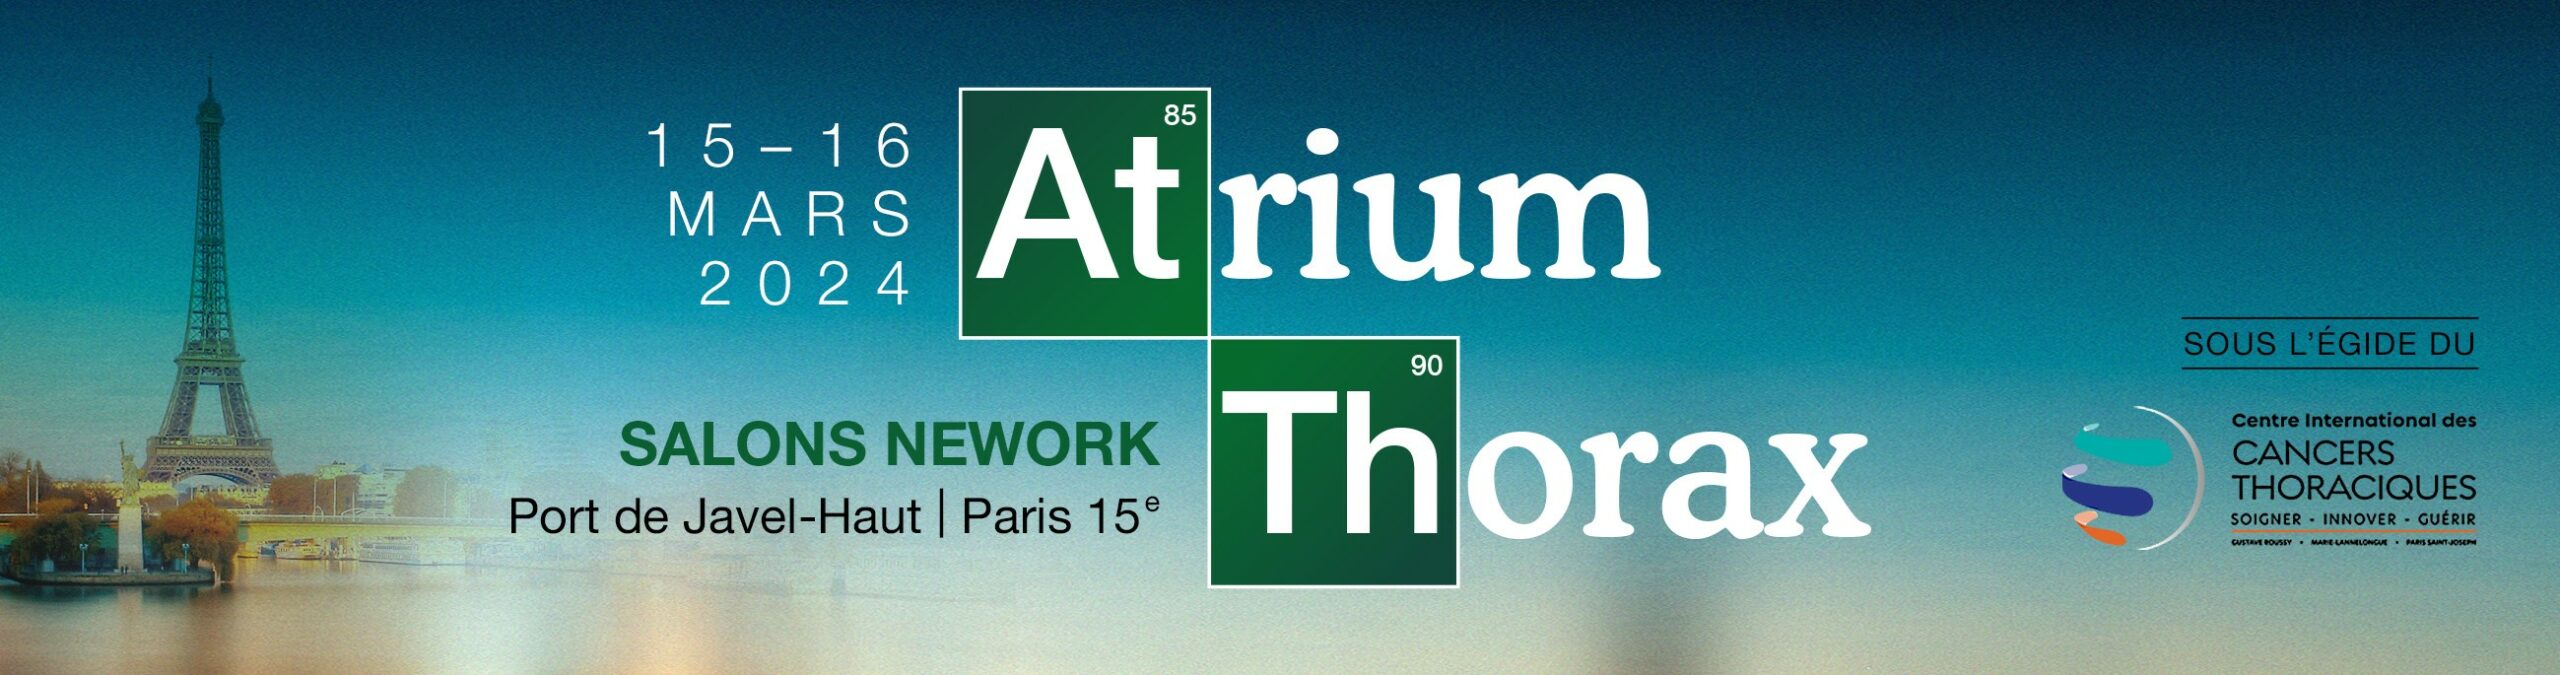 Atrium Thorax